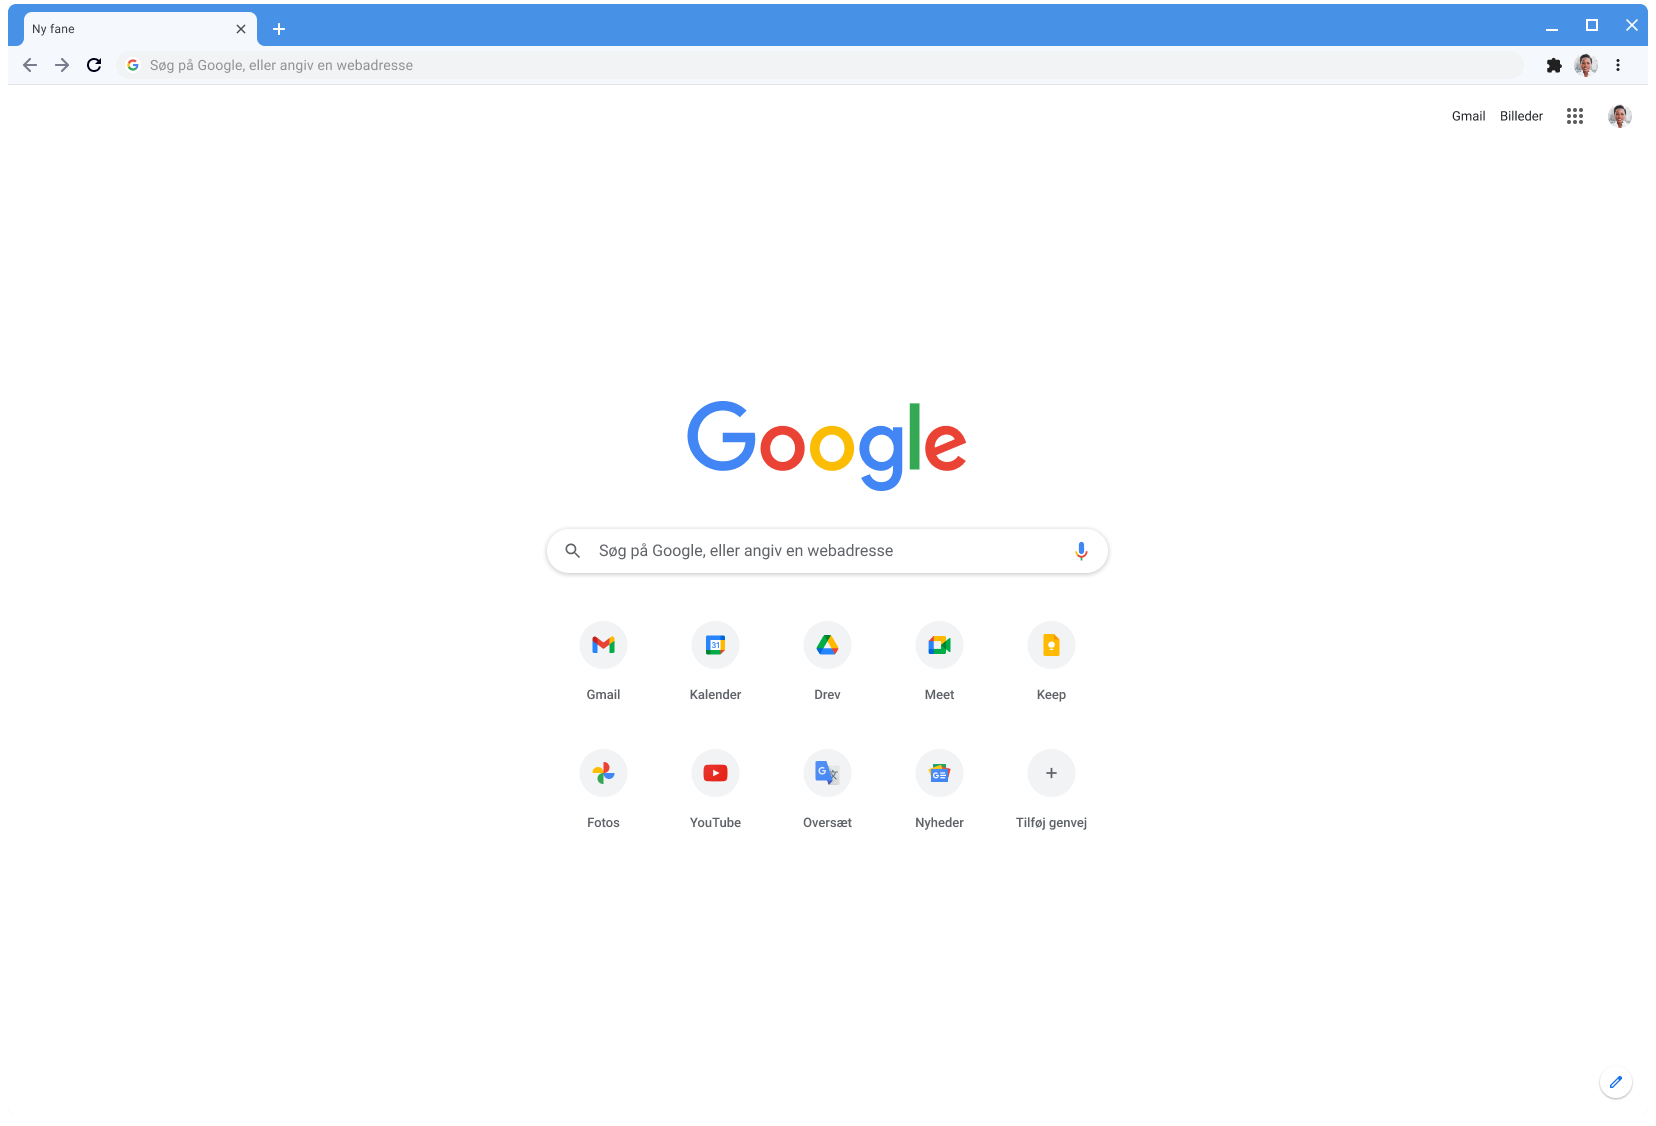 Et Chrome-browservindue, der viser Google.com med det klassiske tema.